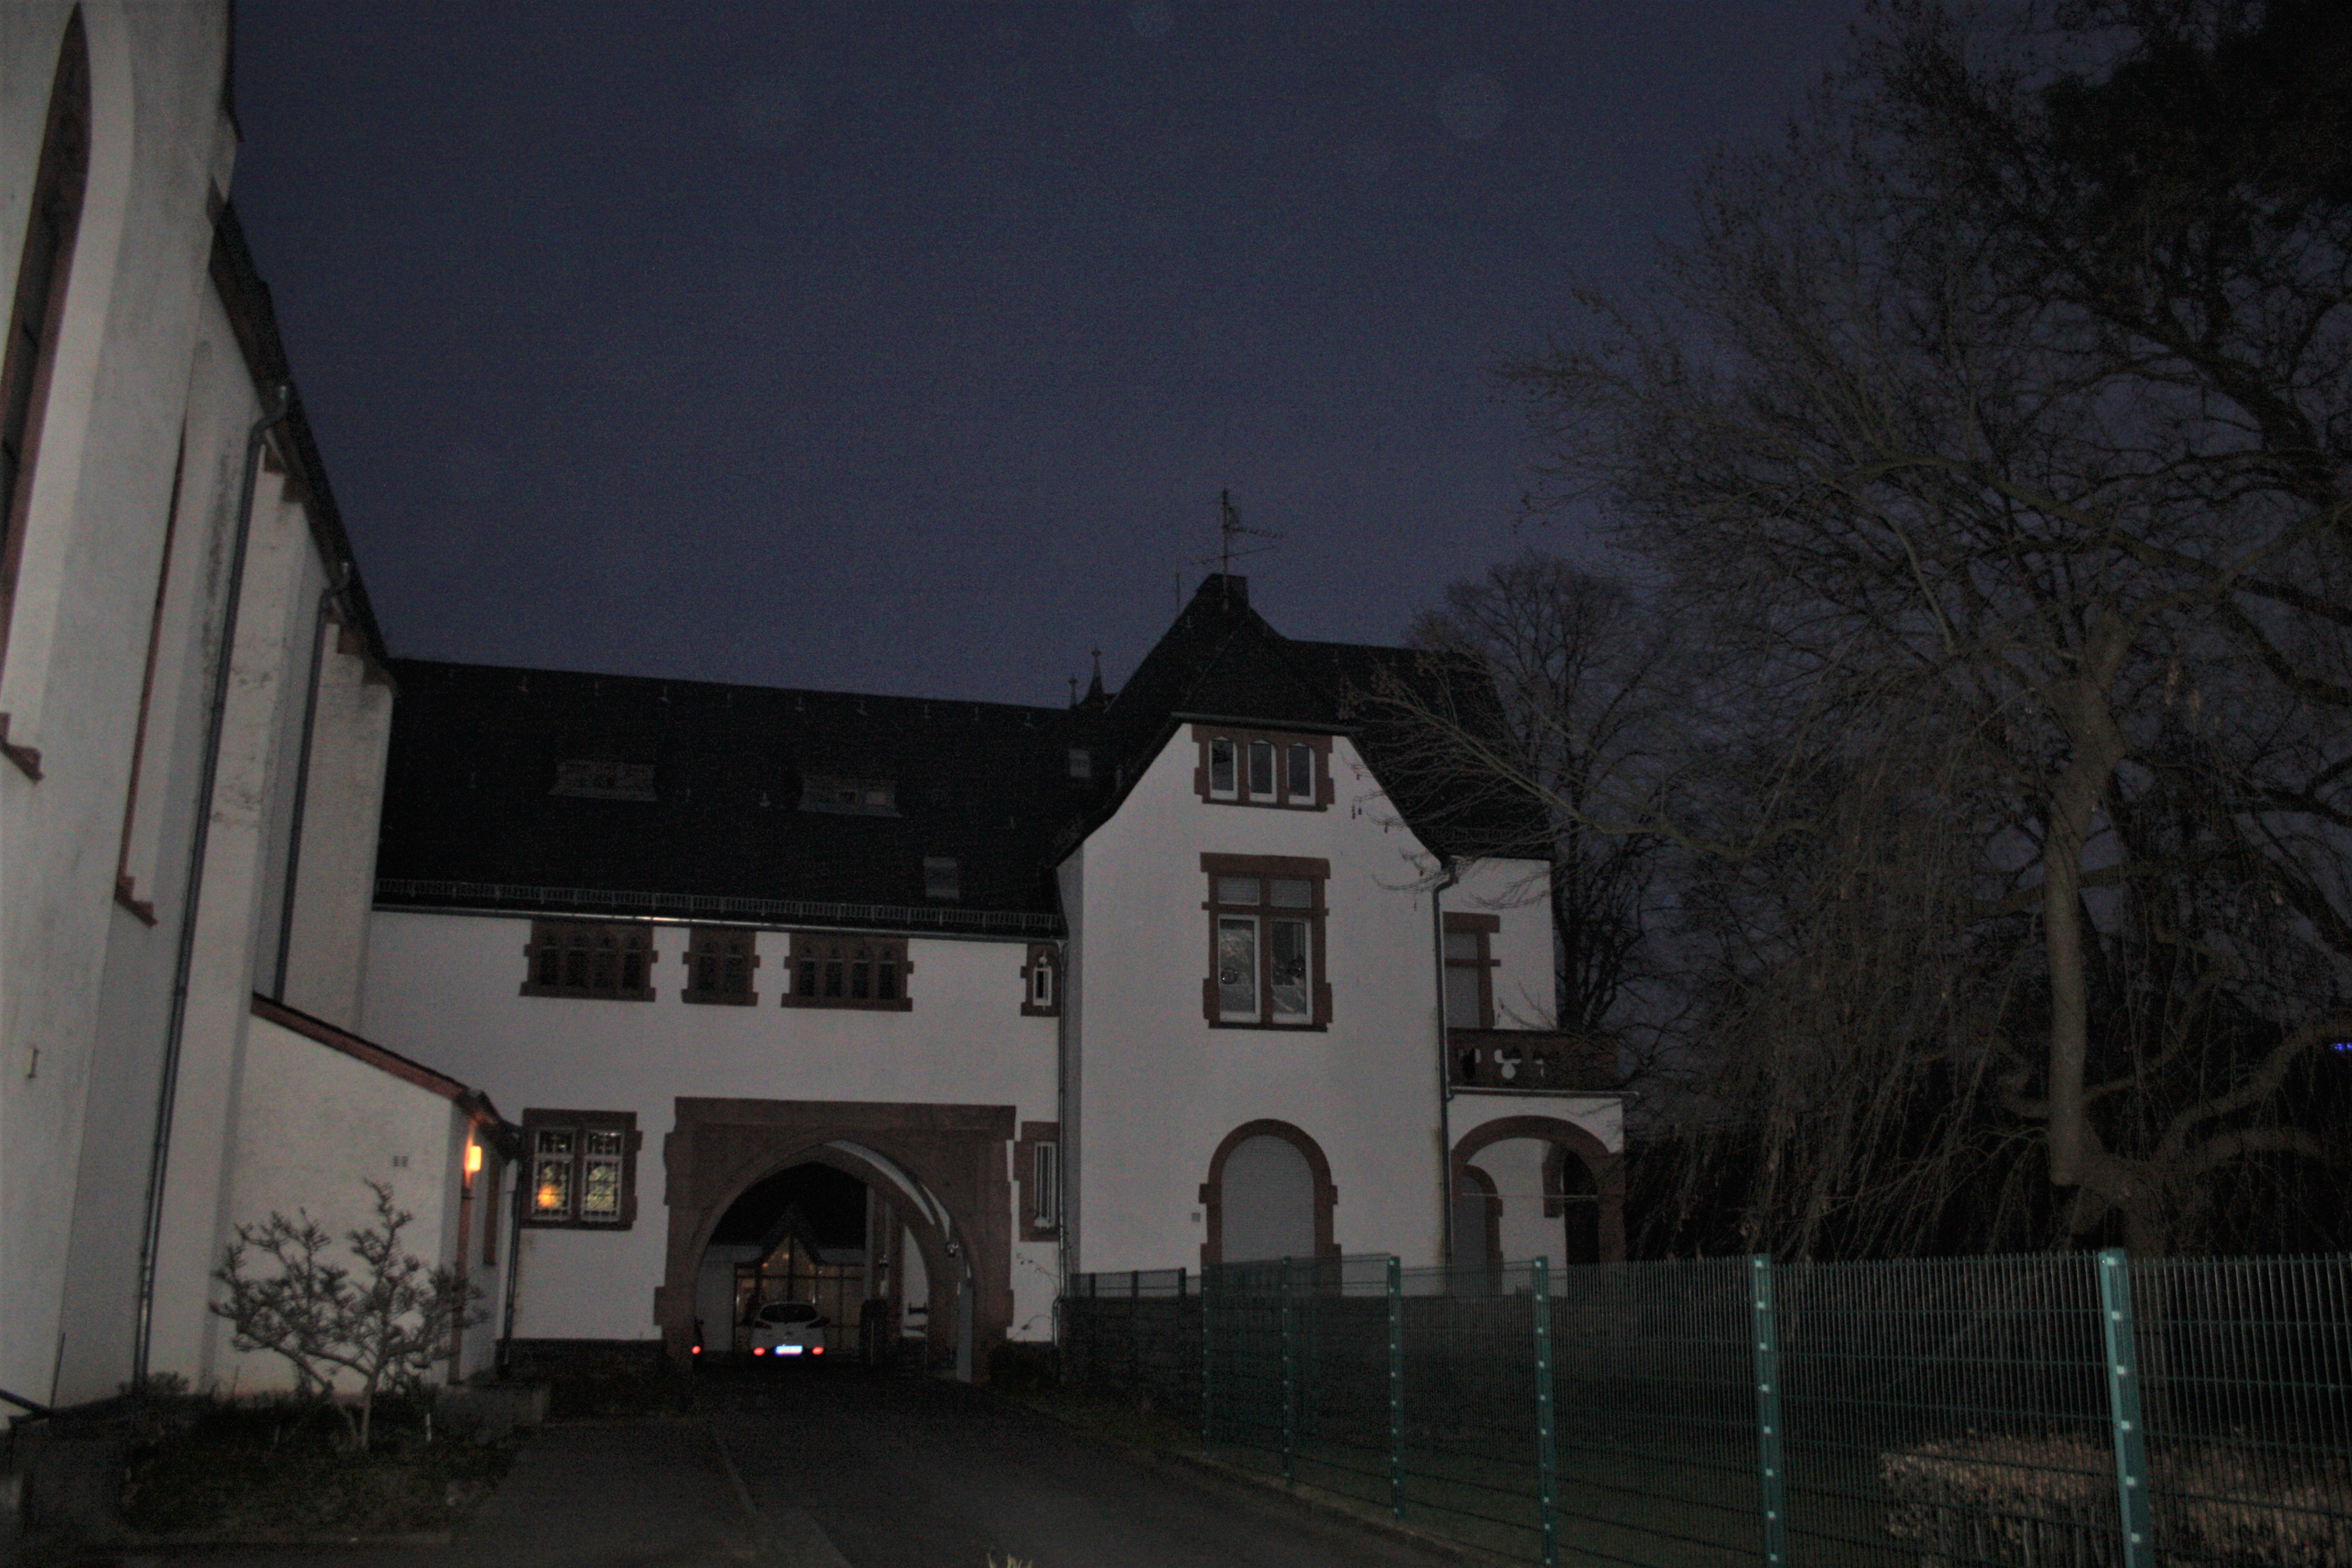 Impressionen Bad Nauheim bei Nacht.
